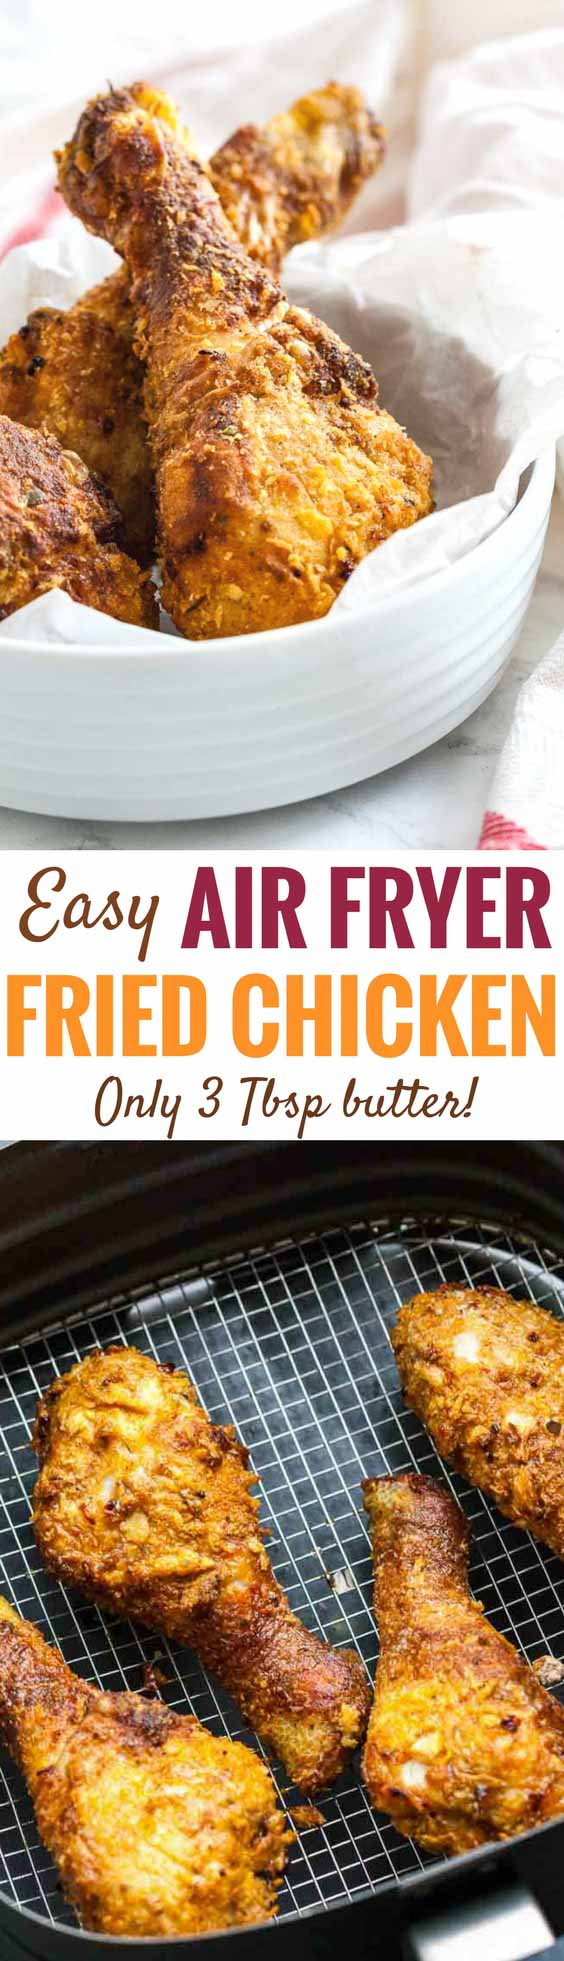 Chicken Legs Air Fryer
 AirFryer Chicken Drumsticks Easy Air Fryer fried chicken